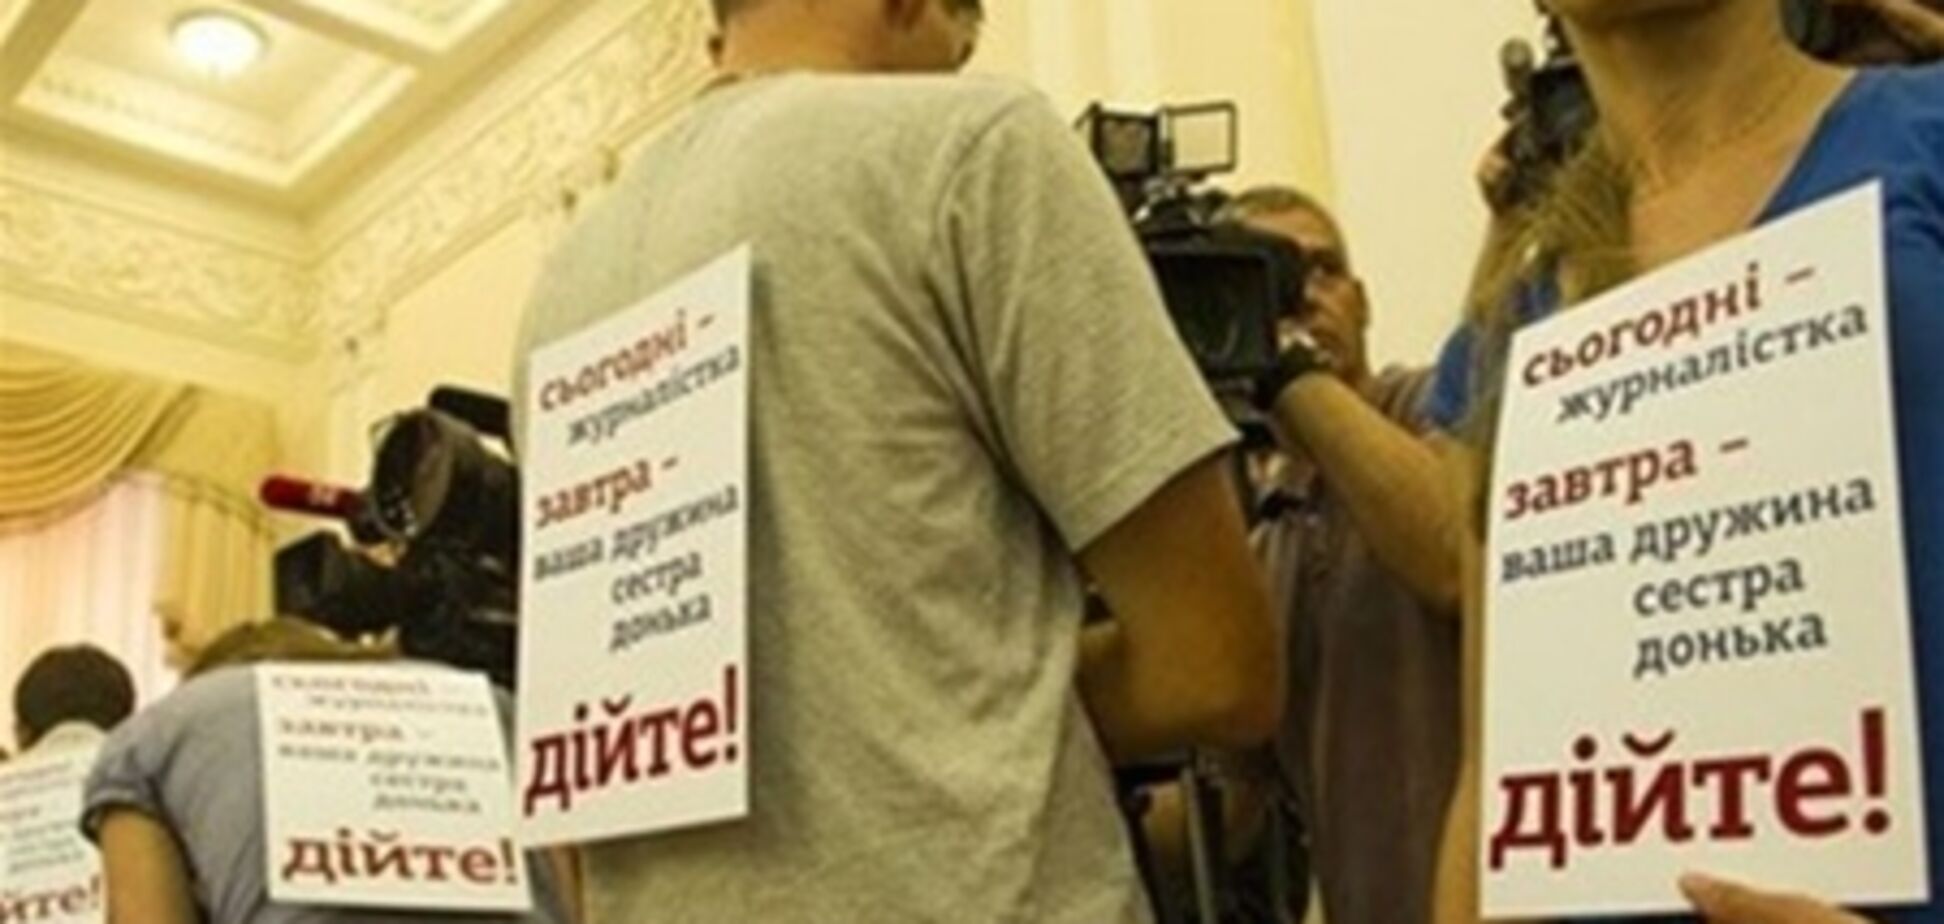 'Репортеры без границ' раскритиковали реакцию Азарова на акцию журналистов